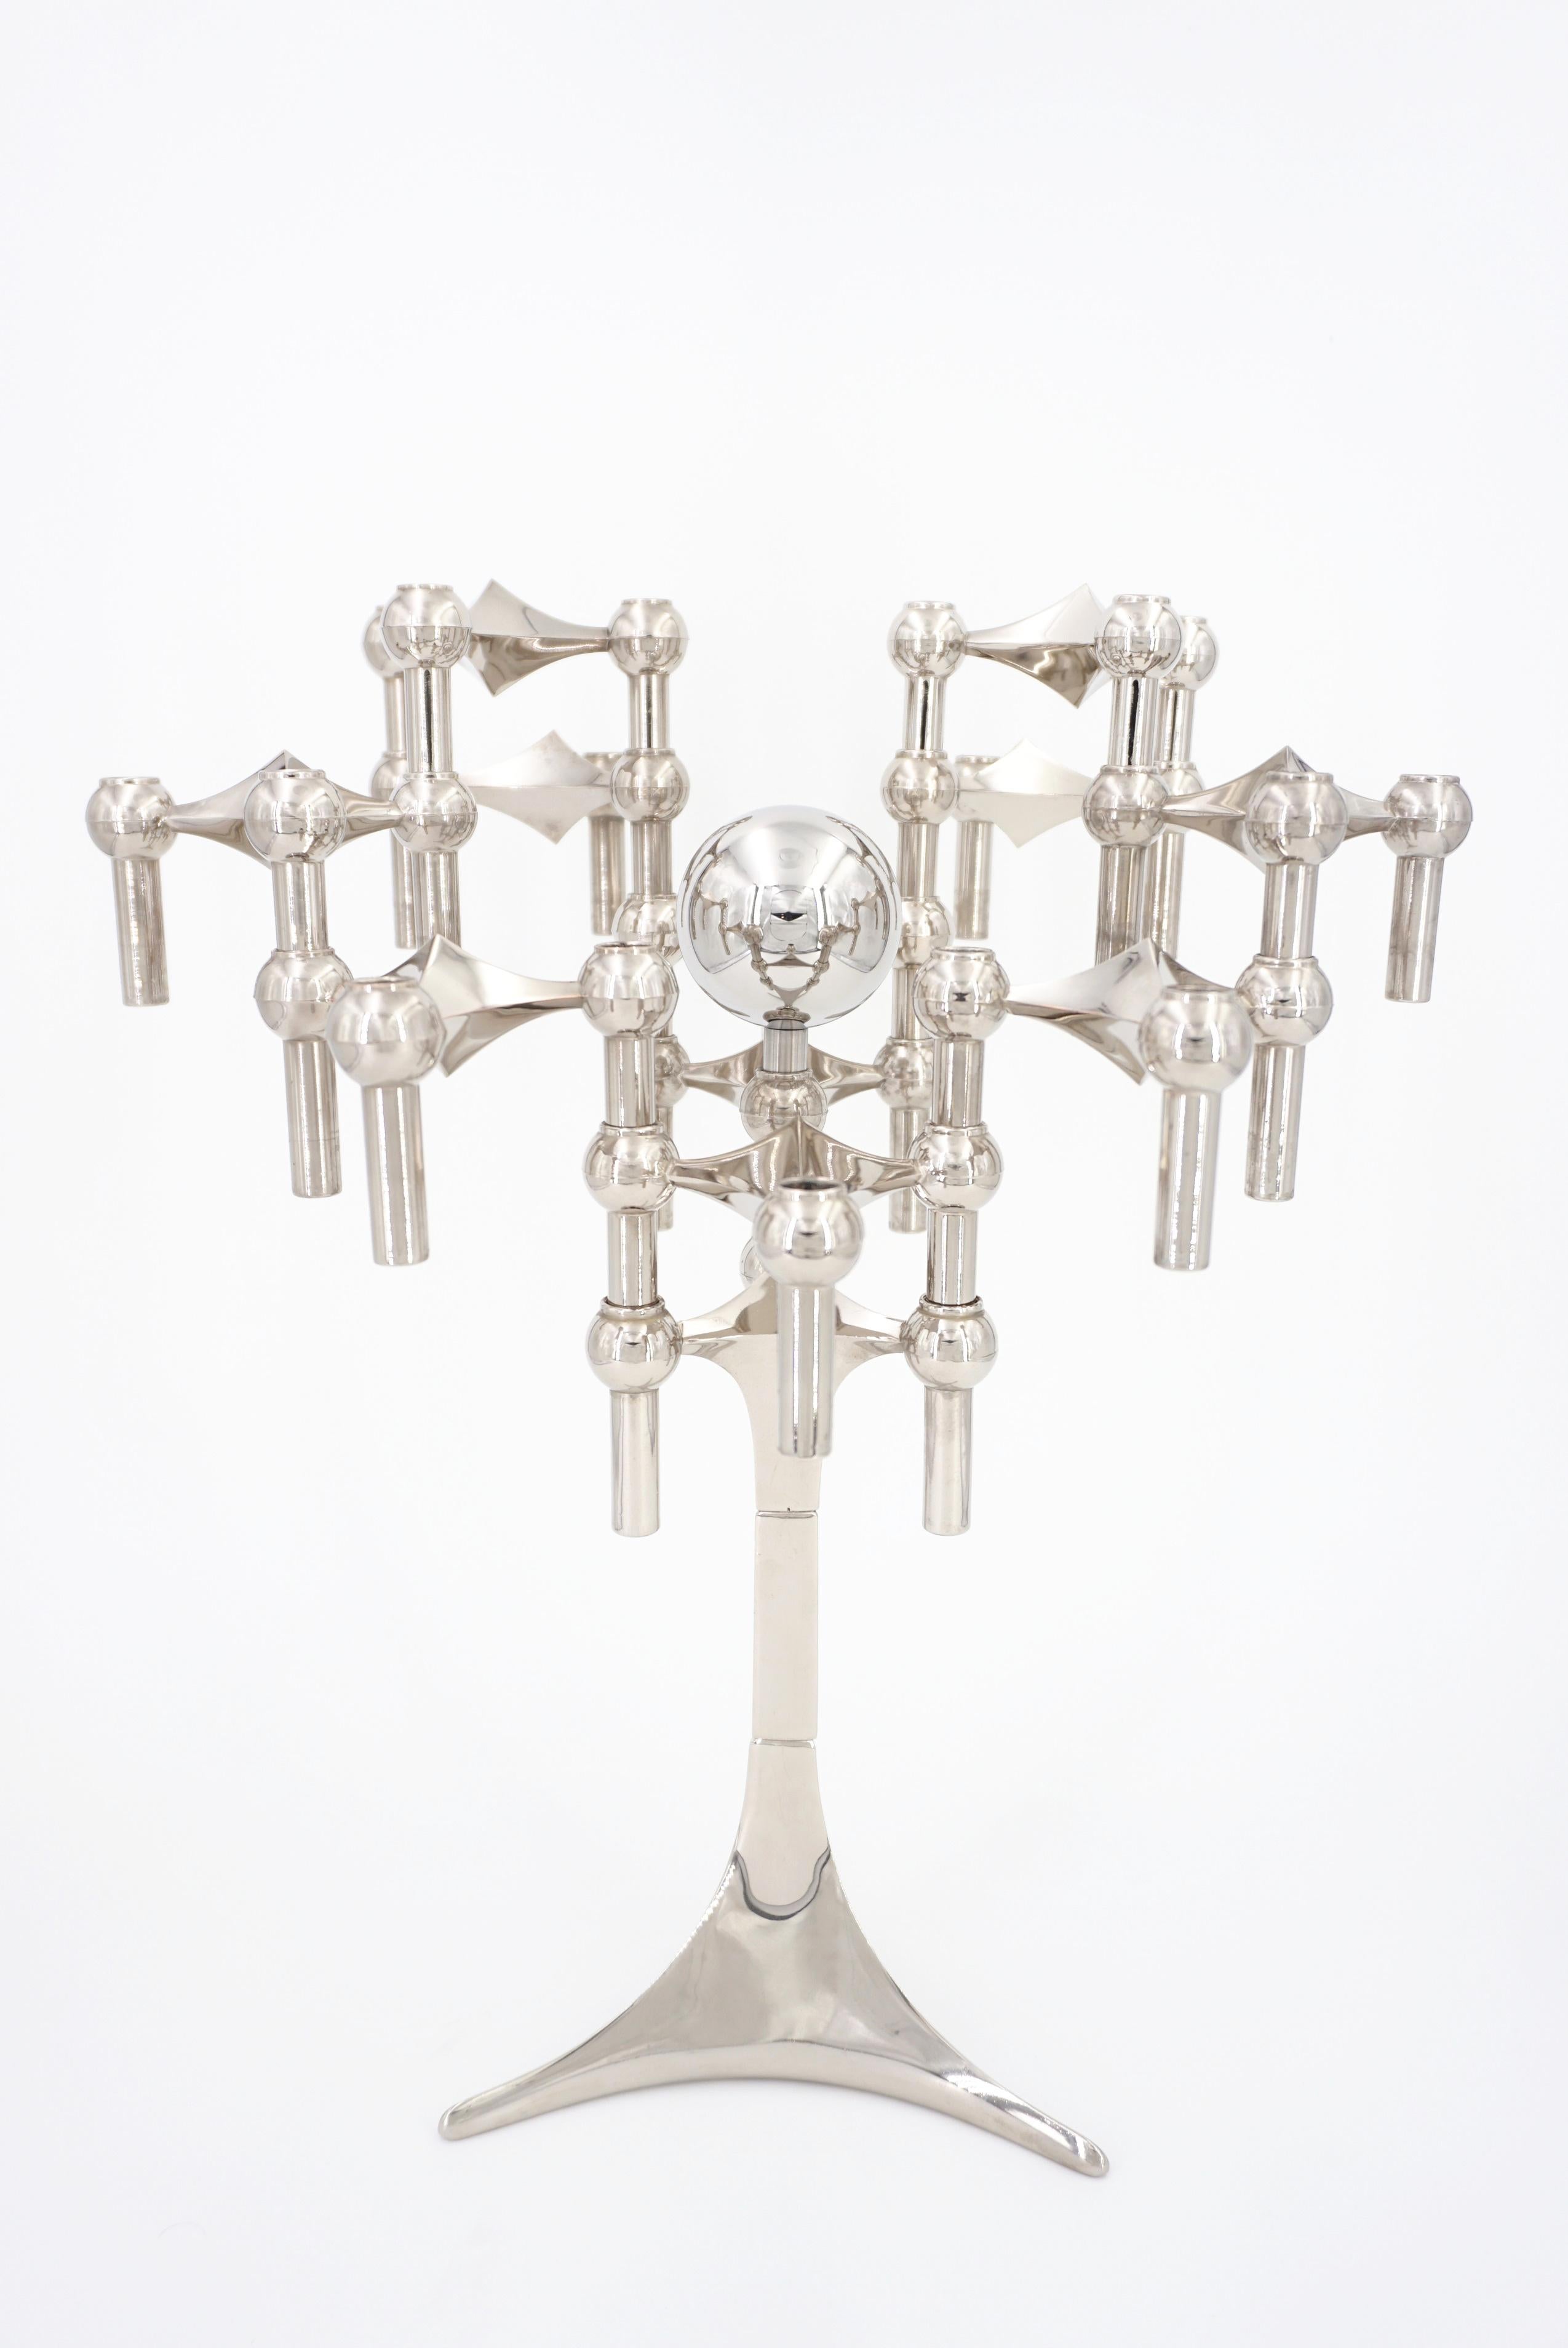 Fritz Nagel 1970er Jahre Design modular und Chrom Kerzenhalter Set bestehend aus einem tripode Basis, 11 Kerzenhalter, in denen Sie bis zu 3 Kerzen und eine Kugel setzen konnte. Hohe Qualität, erstaunlich und sehr dekorativ, unendlich modular, wenn